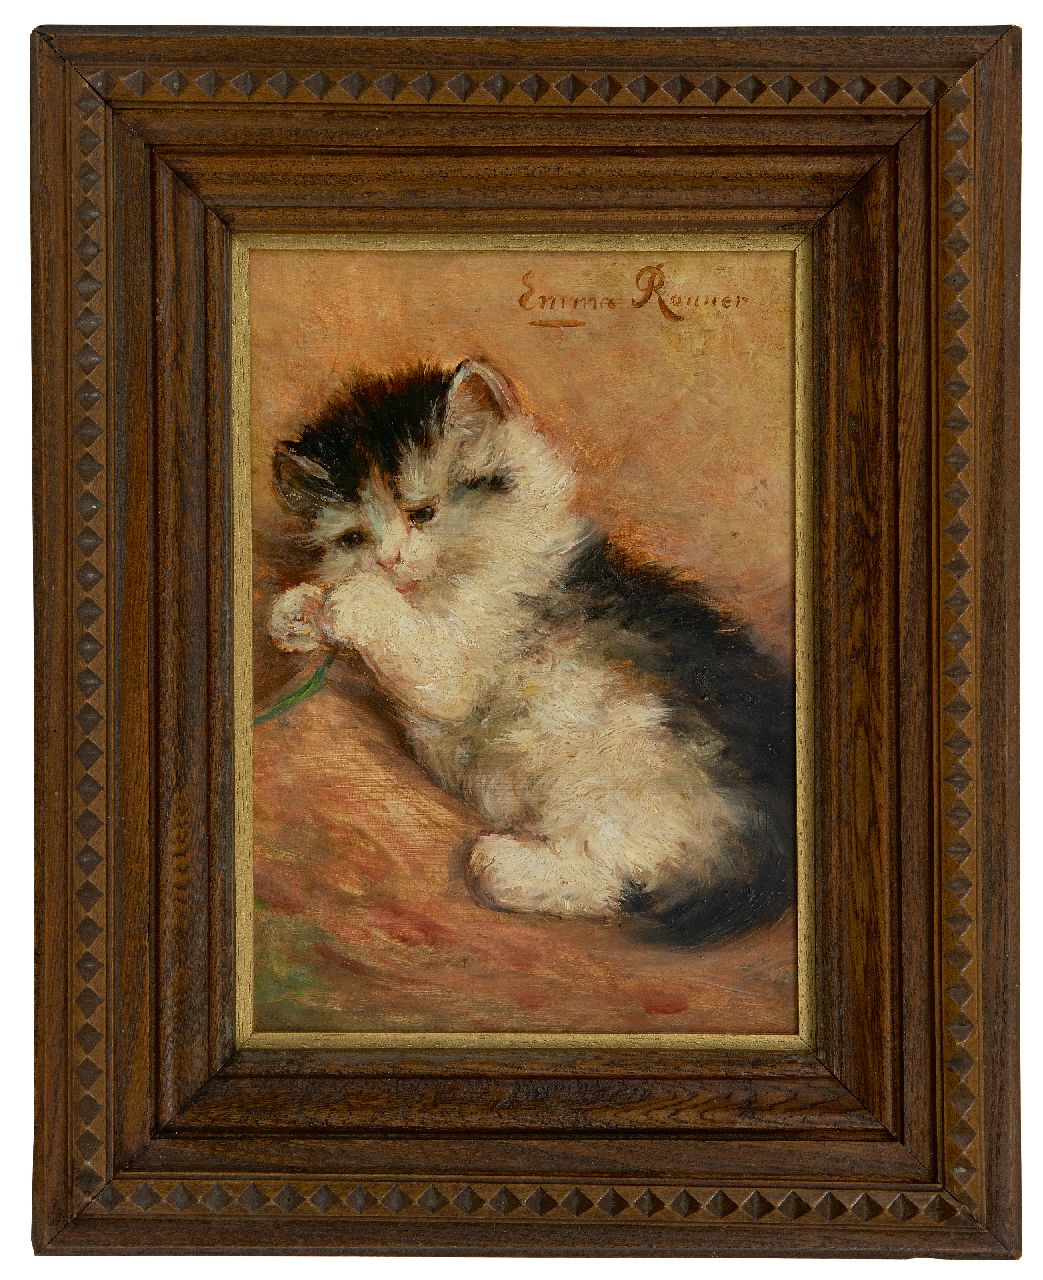 Ronner S.E.C.  | Stephanie 'Emma' Clotilde Ronner | Schilderijen te koop aangeboden | Speels jong katje, olieverf op paneel 23,4 x 16,5 cm, gesigneerd rechtsboven